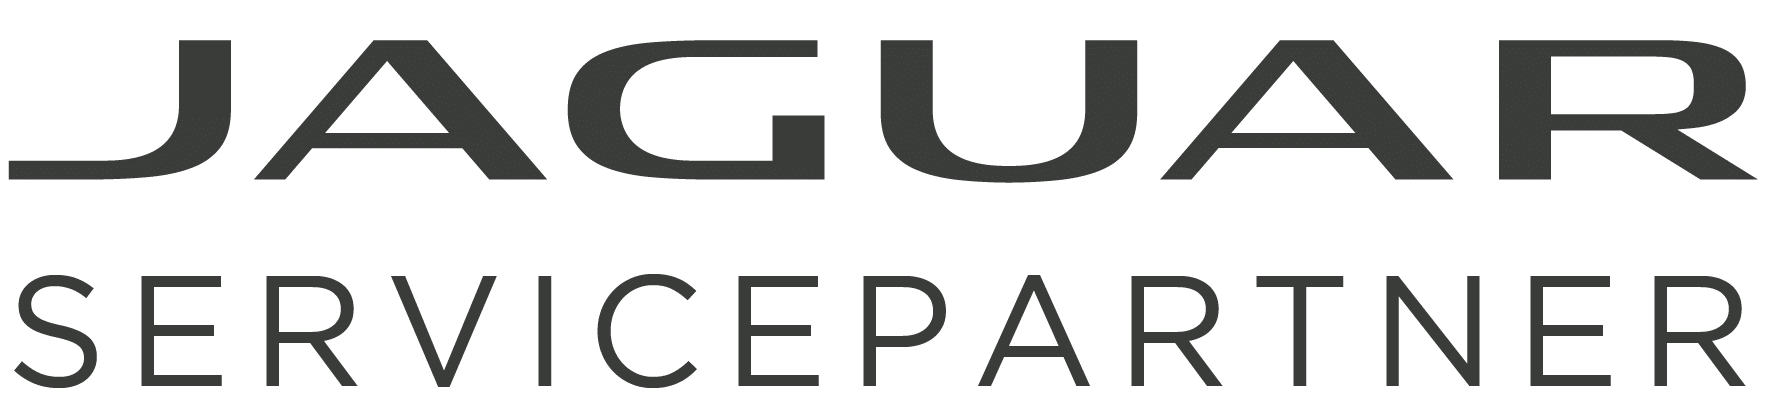 Jaguar 2023 Schriftzug Servicepartner